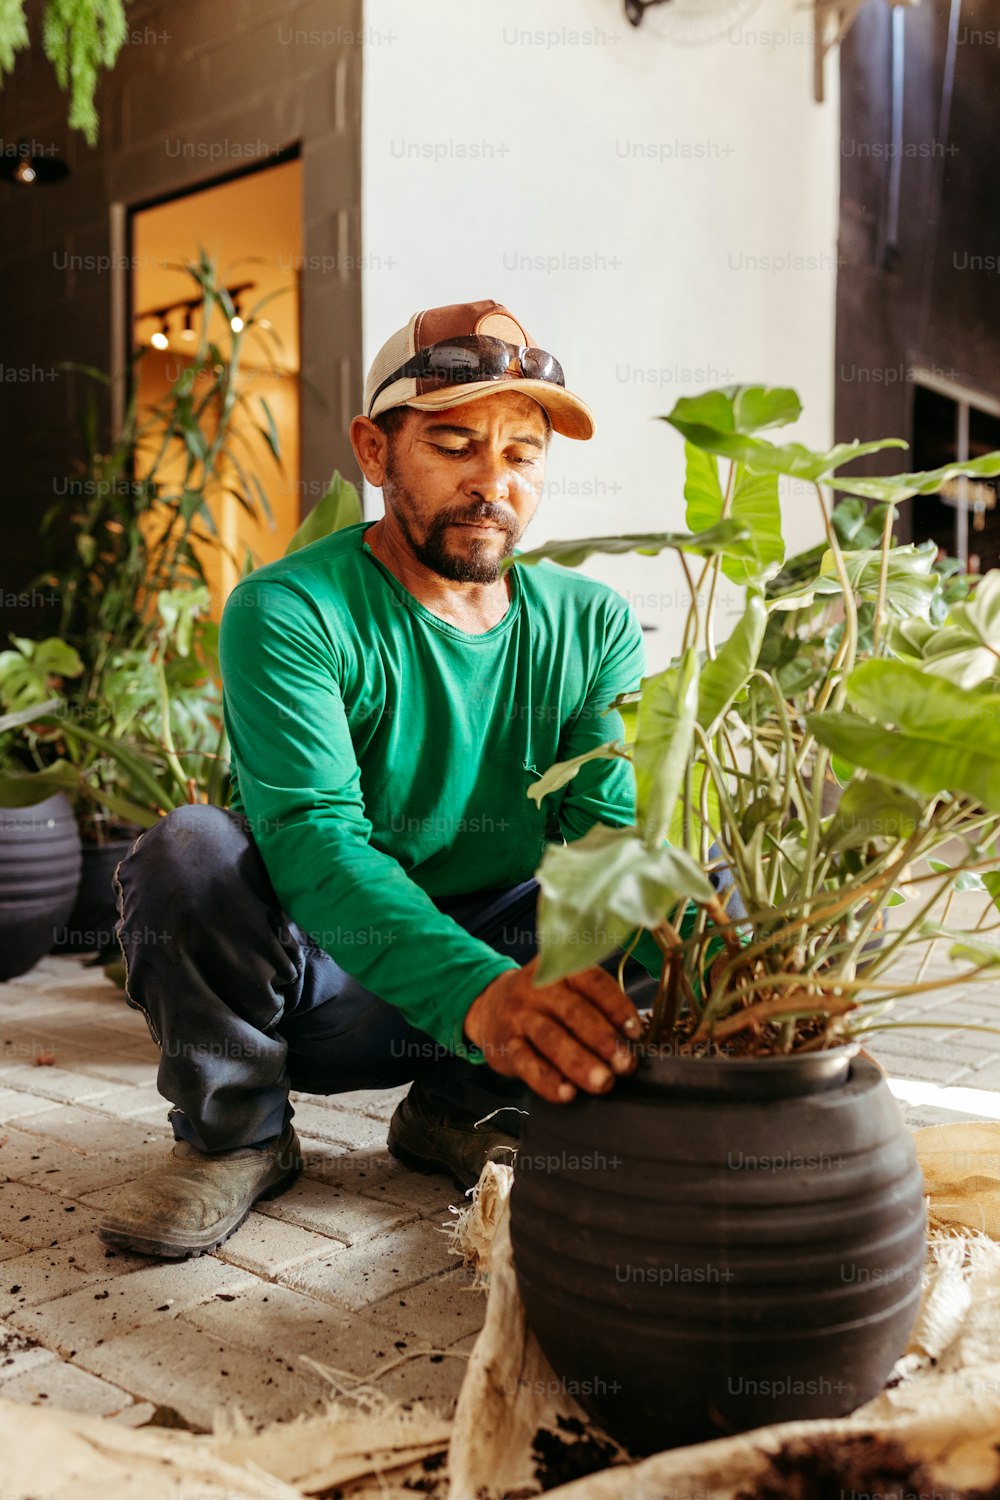 Un hombre arrodillado junto a una planta en maceta